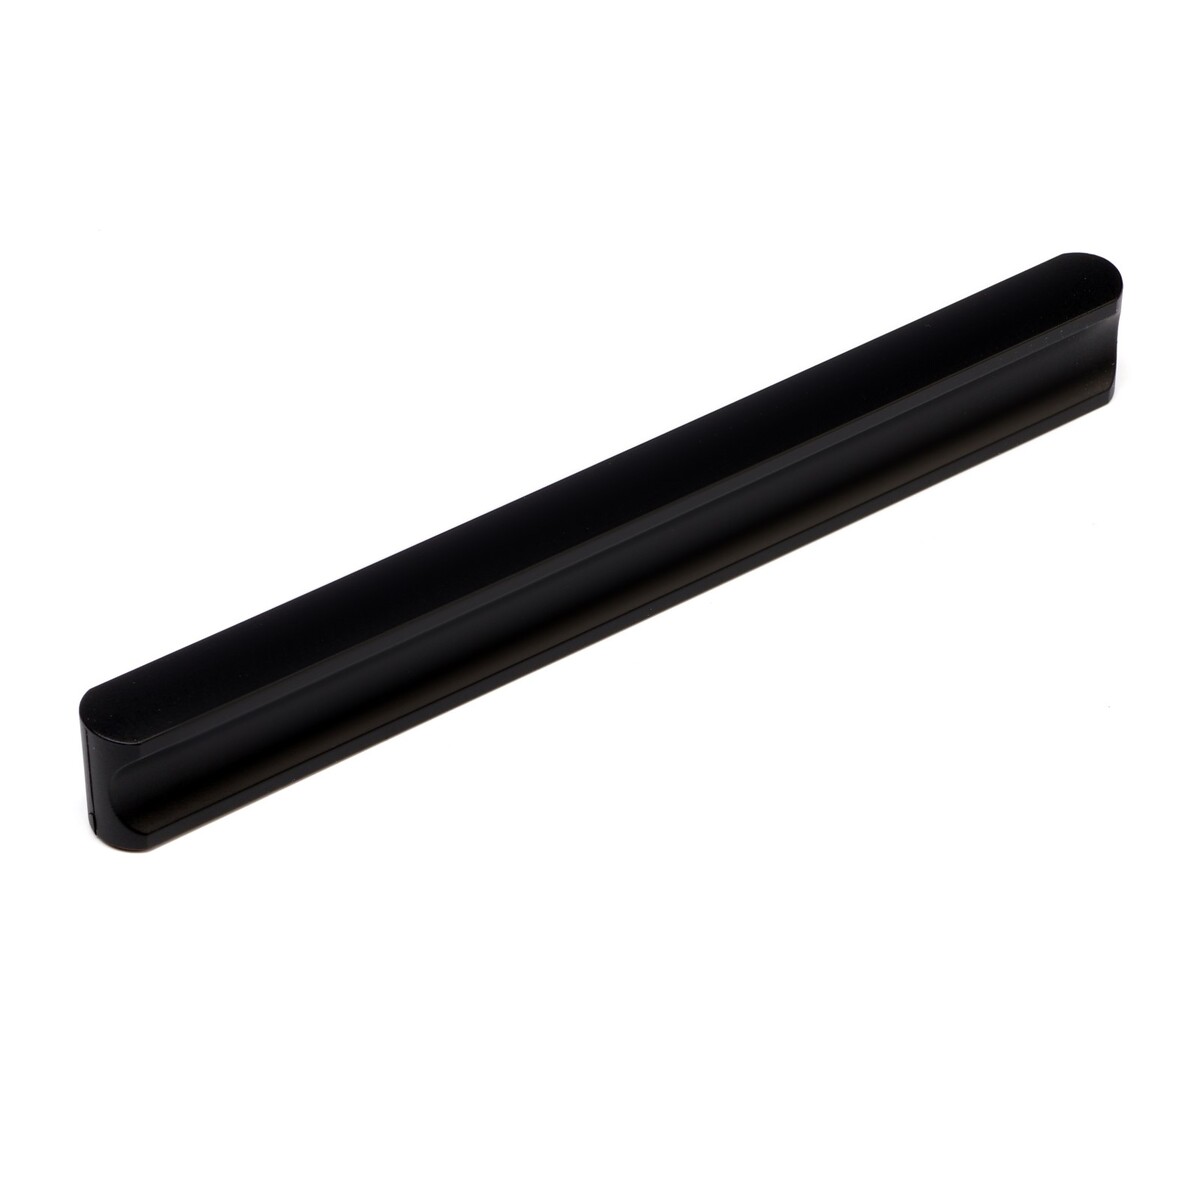 Ручка-скоба cappio rsc034, пластик, м/о 128 мм, цвет черный ручка скоба cappio rsc034 пластик м о 96 мм серый